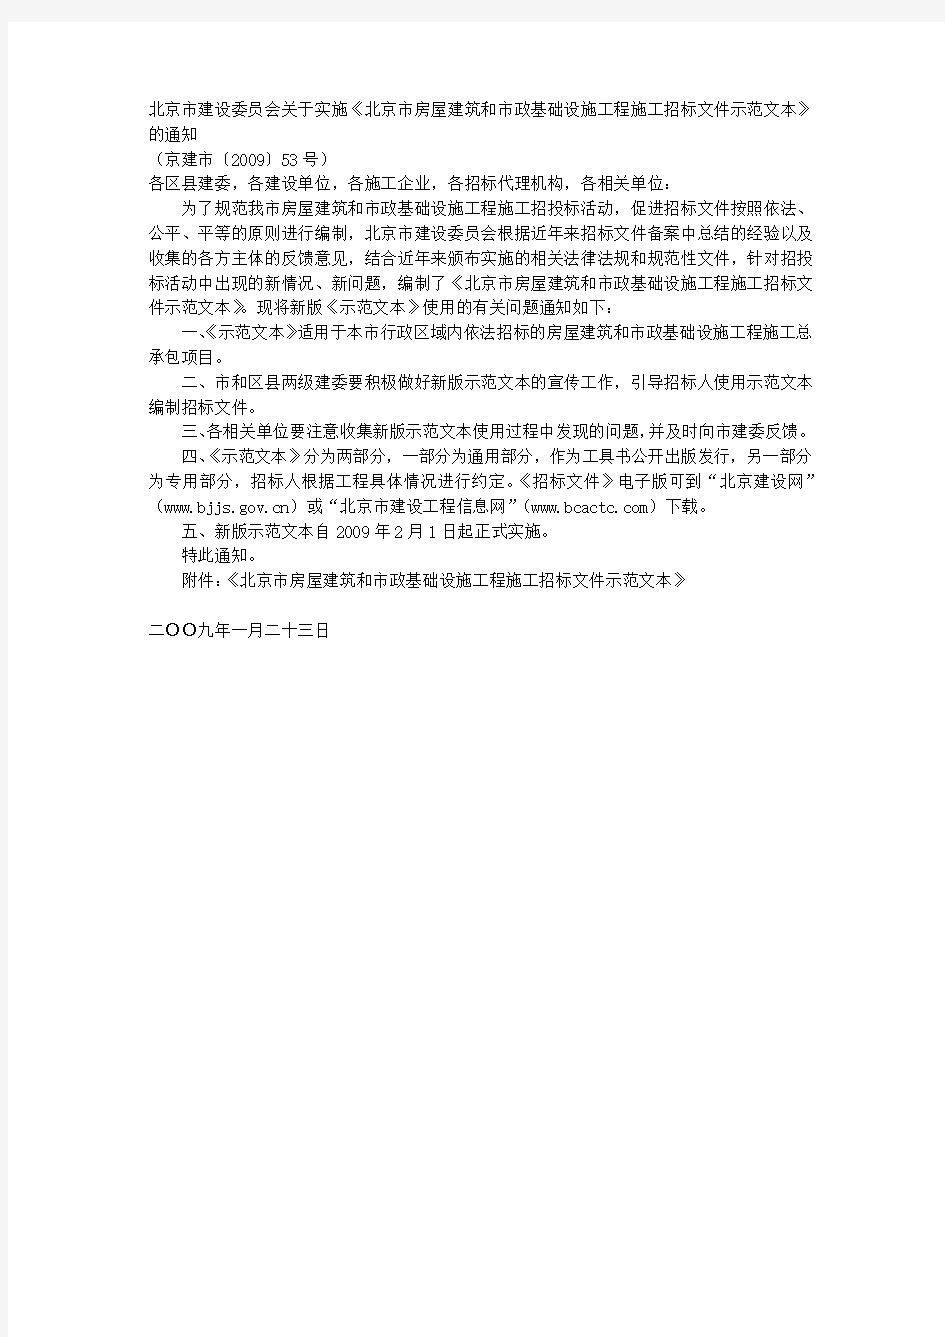 北京市房屋建筑和市政基础设施工程施工招标文件示范文本